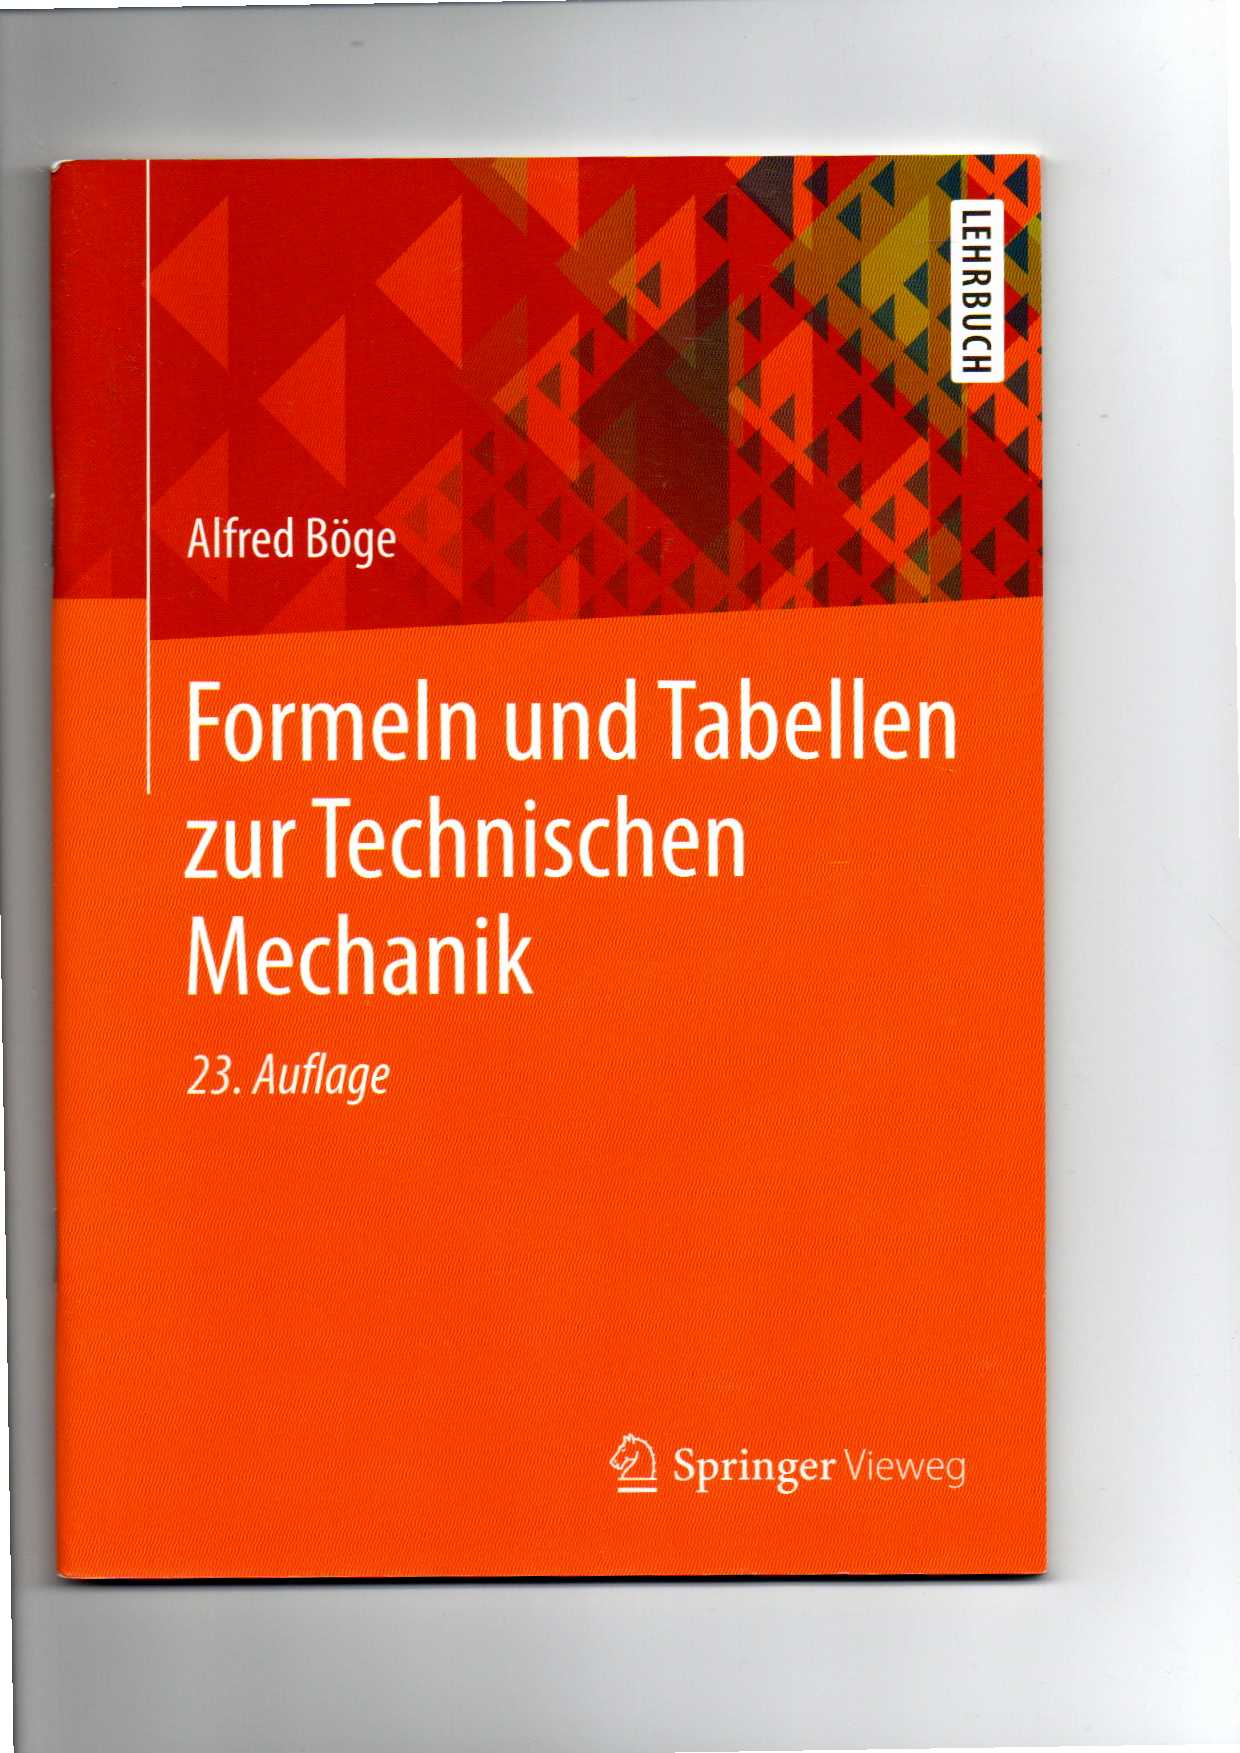 Alfred Böge, Formeln und Tabellen zur Technischen Mechanik - Böge, Alfred, Walter (Mitwirkender) Schlemmer und Gert (Mitwirkender) Böge Wolfgang (Mitwirkender) Böge